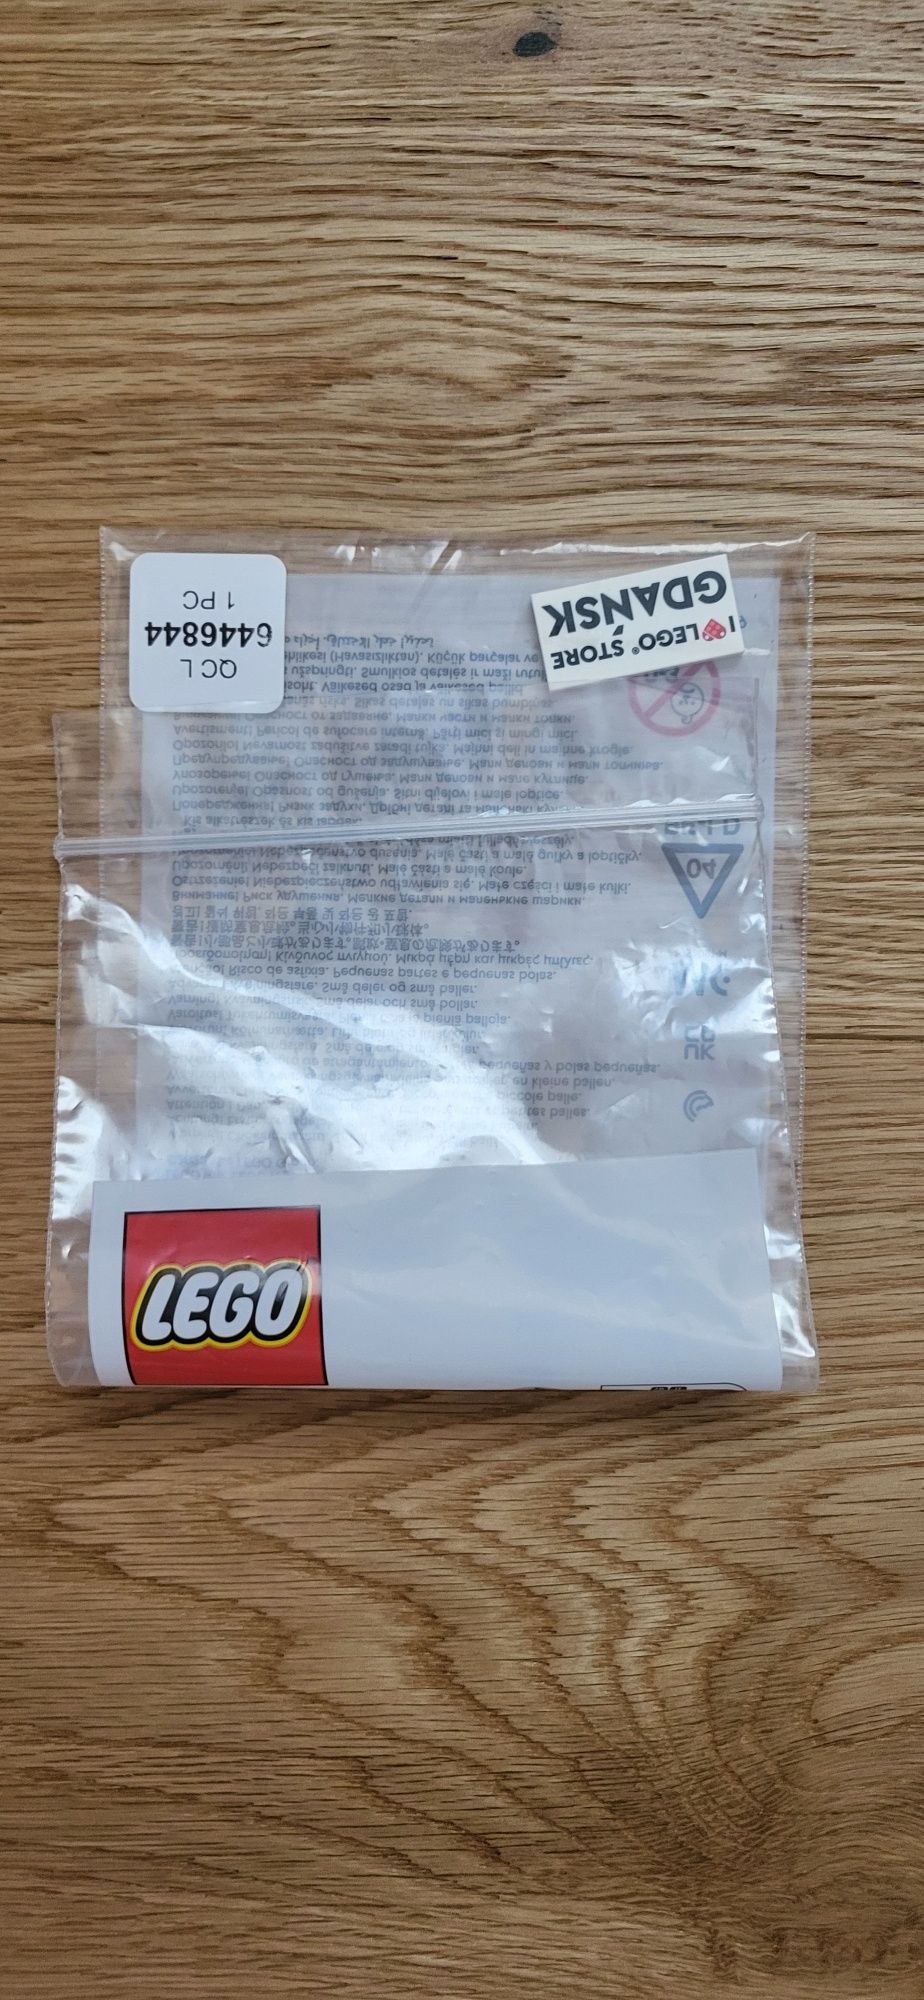 Klocek-I love Lego store Gdańsk-tile 2×4